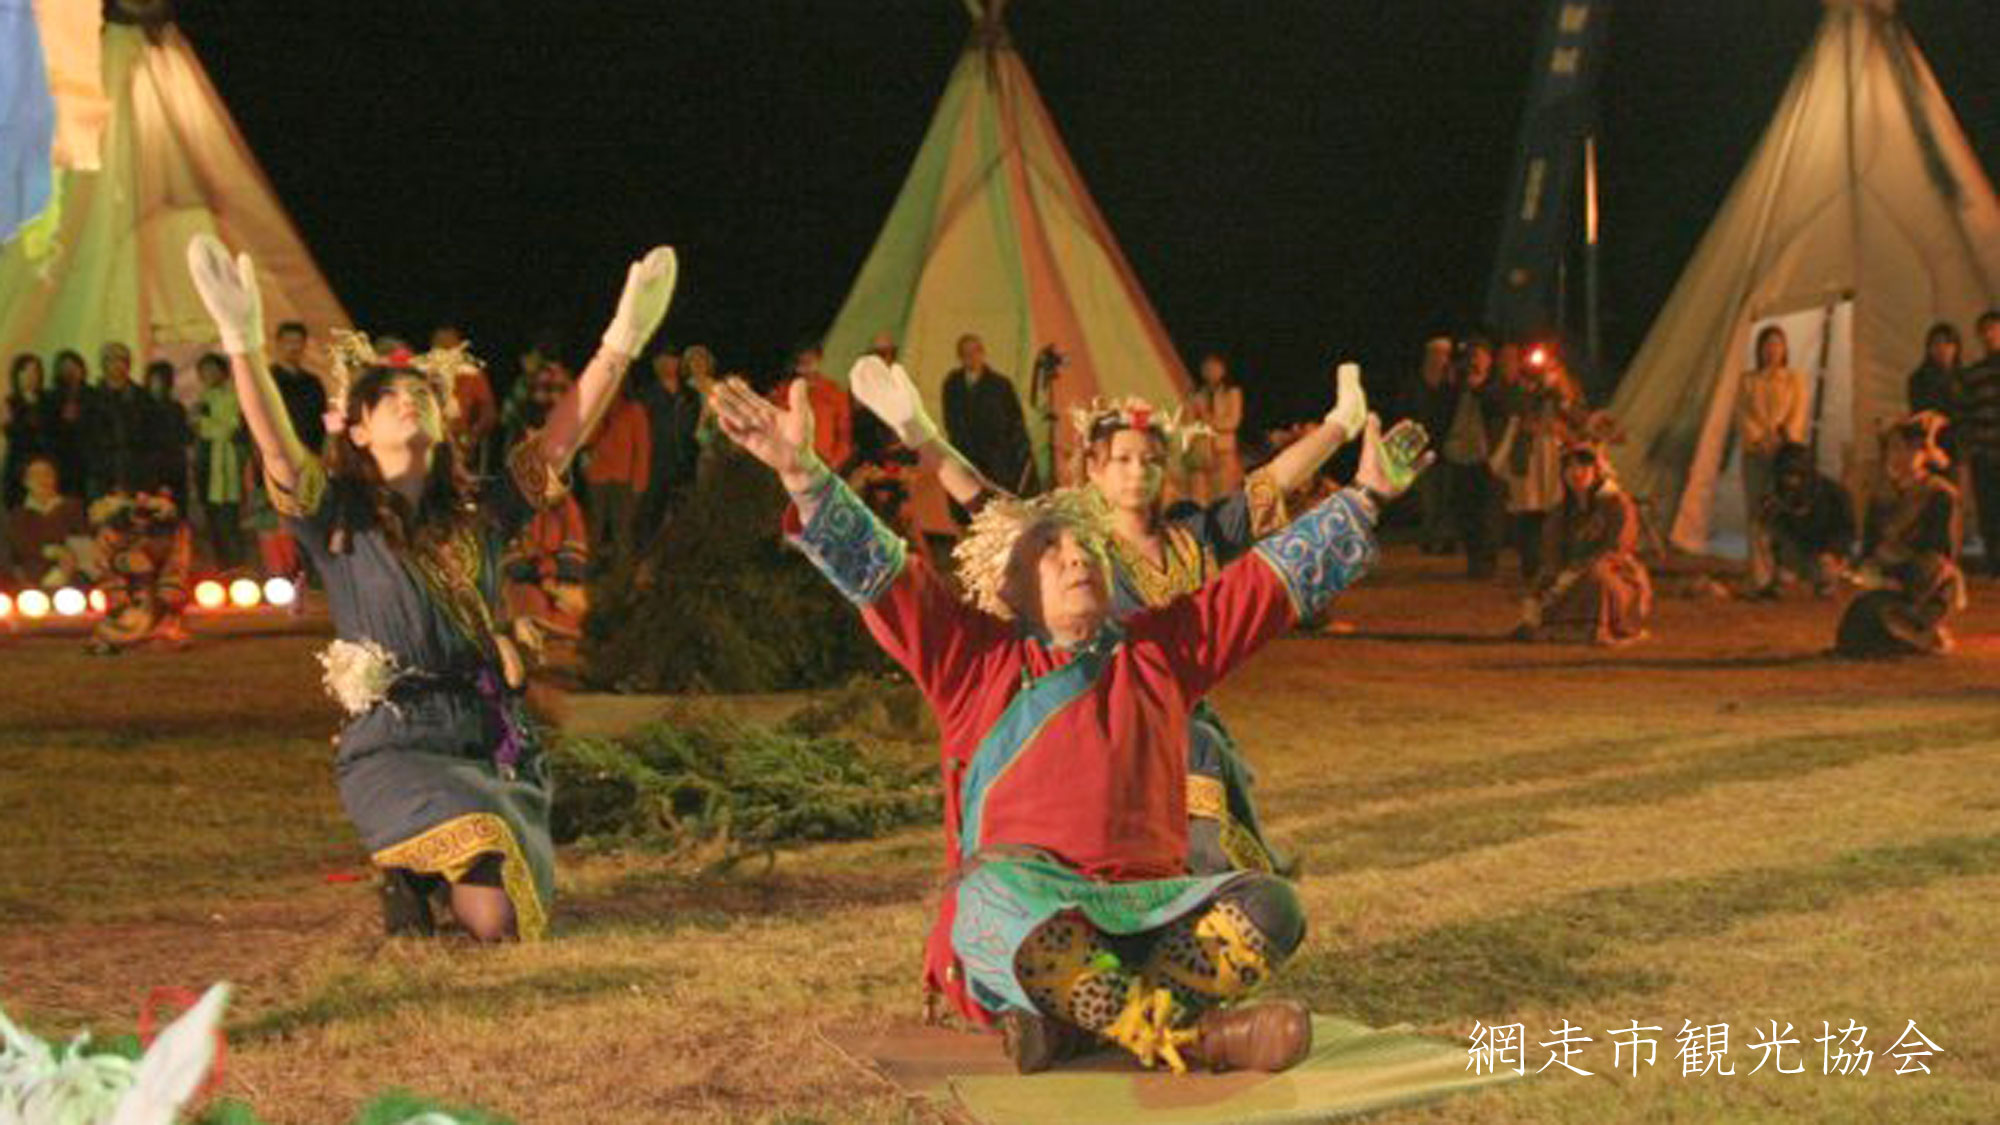 *［オロチョン火祭り］例年7月開催。先住民の慰霊と地元の豊穣を祈願するお祭り